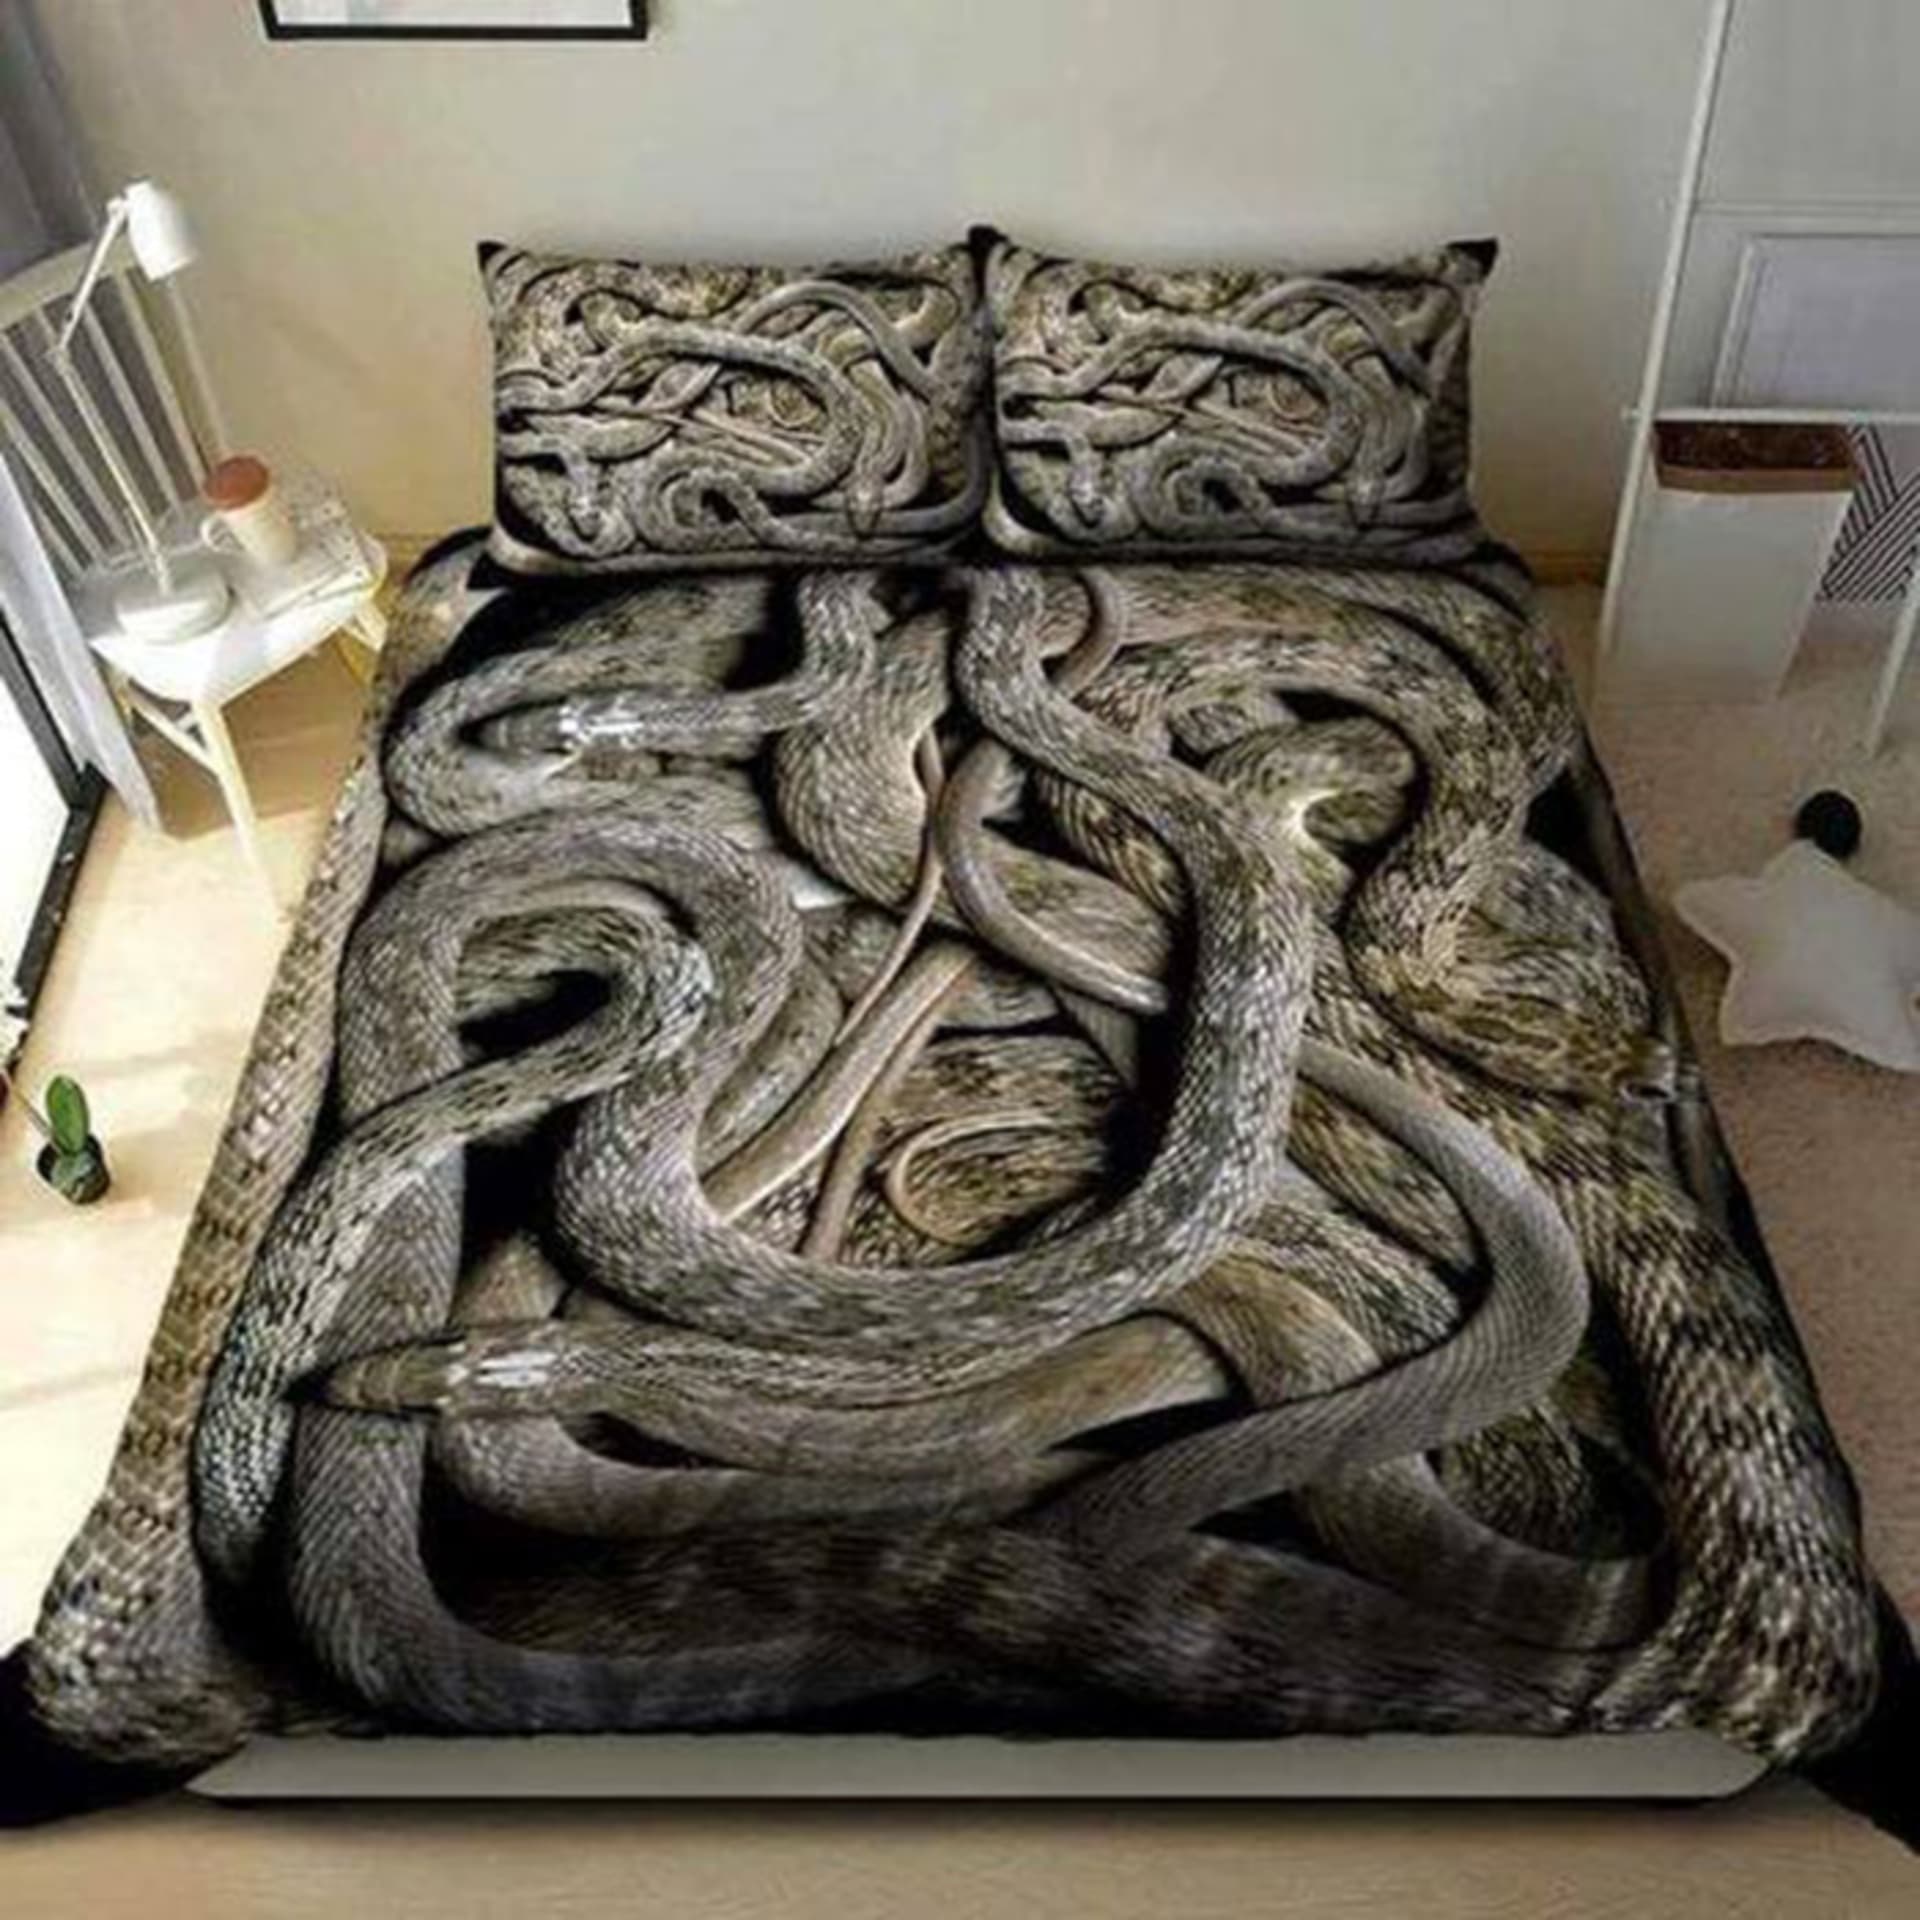 Odpočinuli byste si v této ložnici?